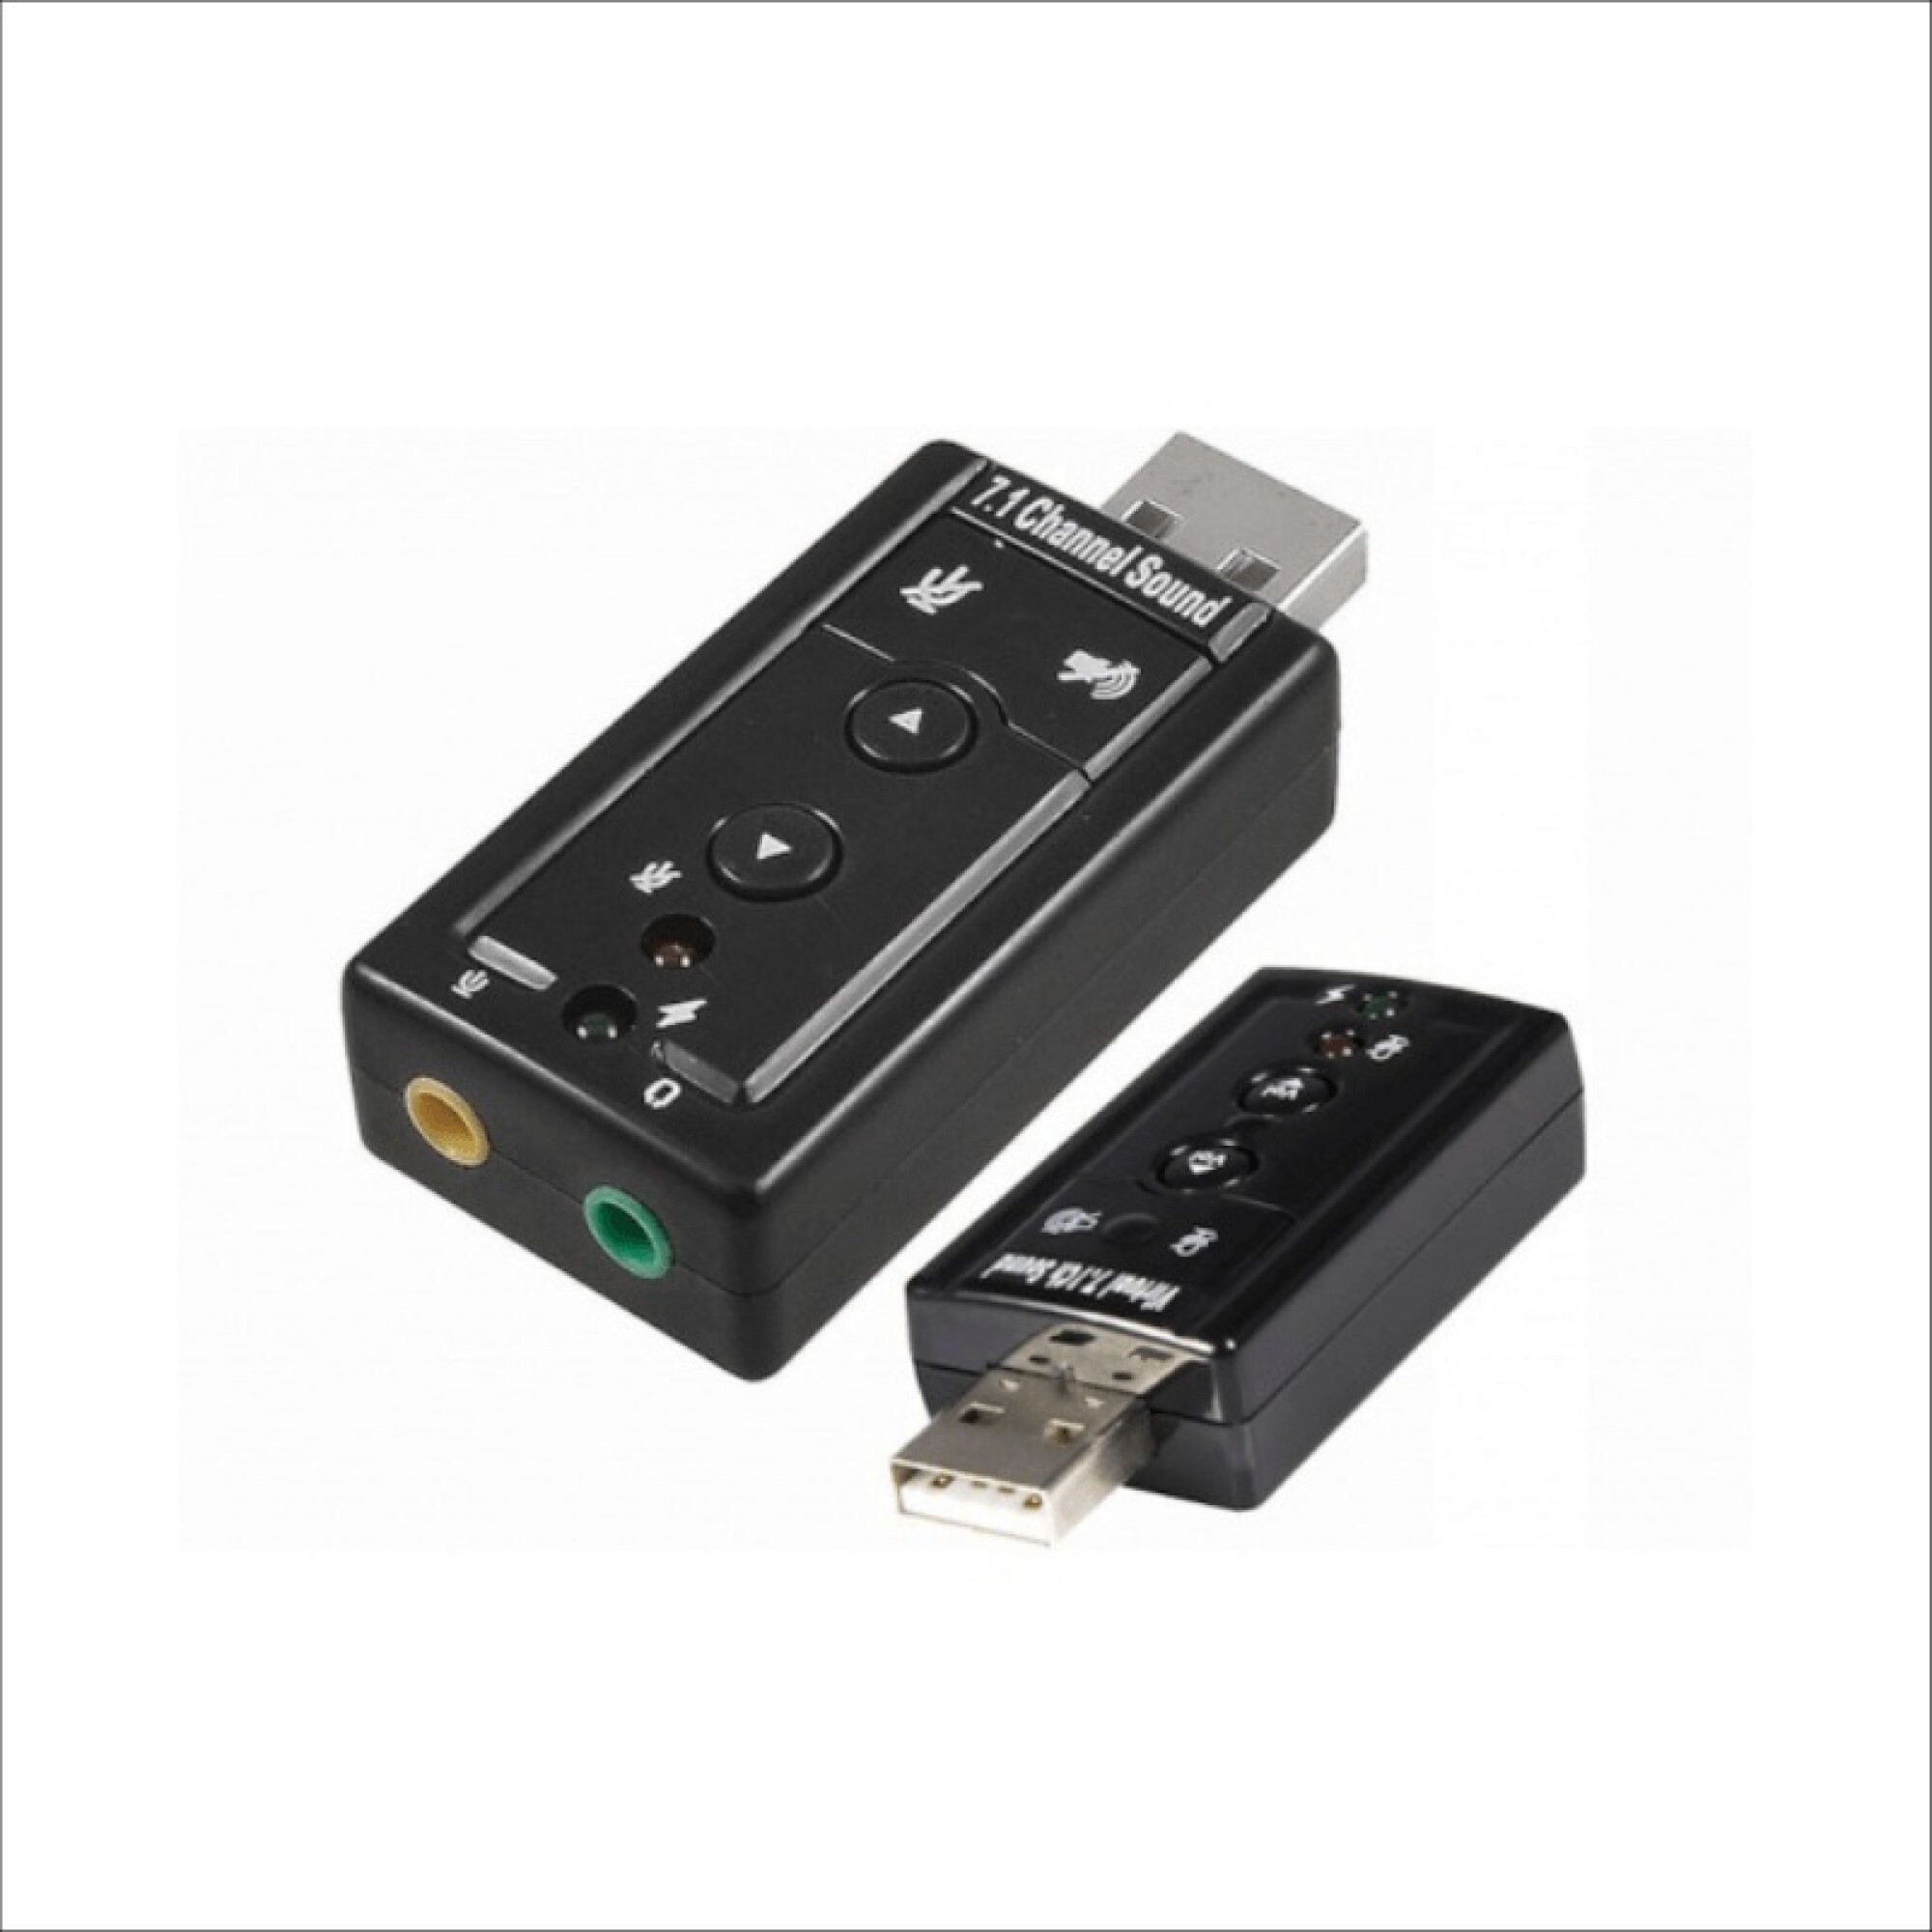 Tarjeta de Sonido Externa USB 7.1 - EPRI